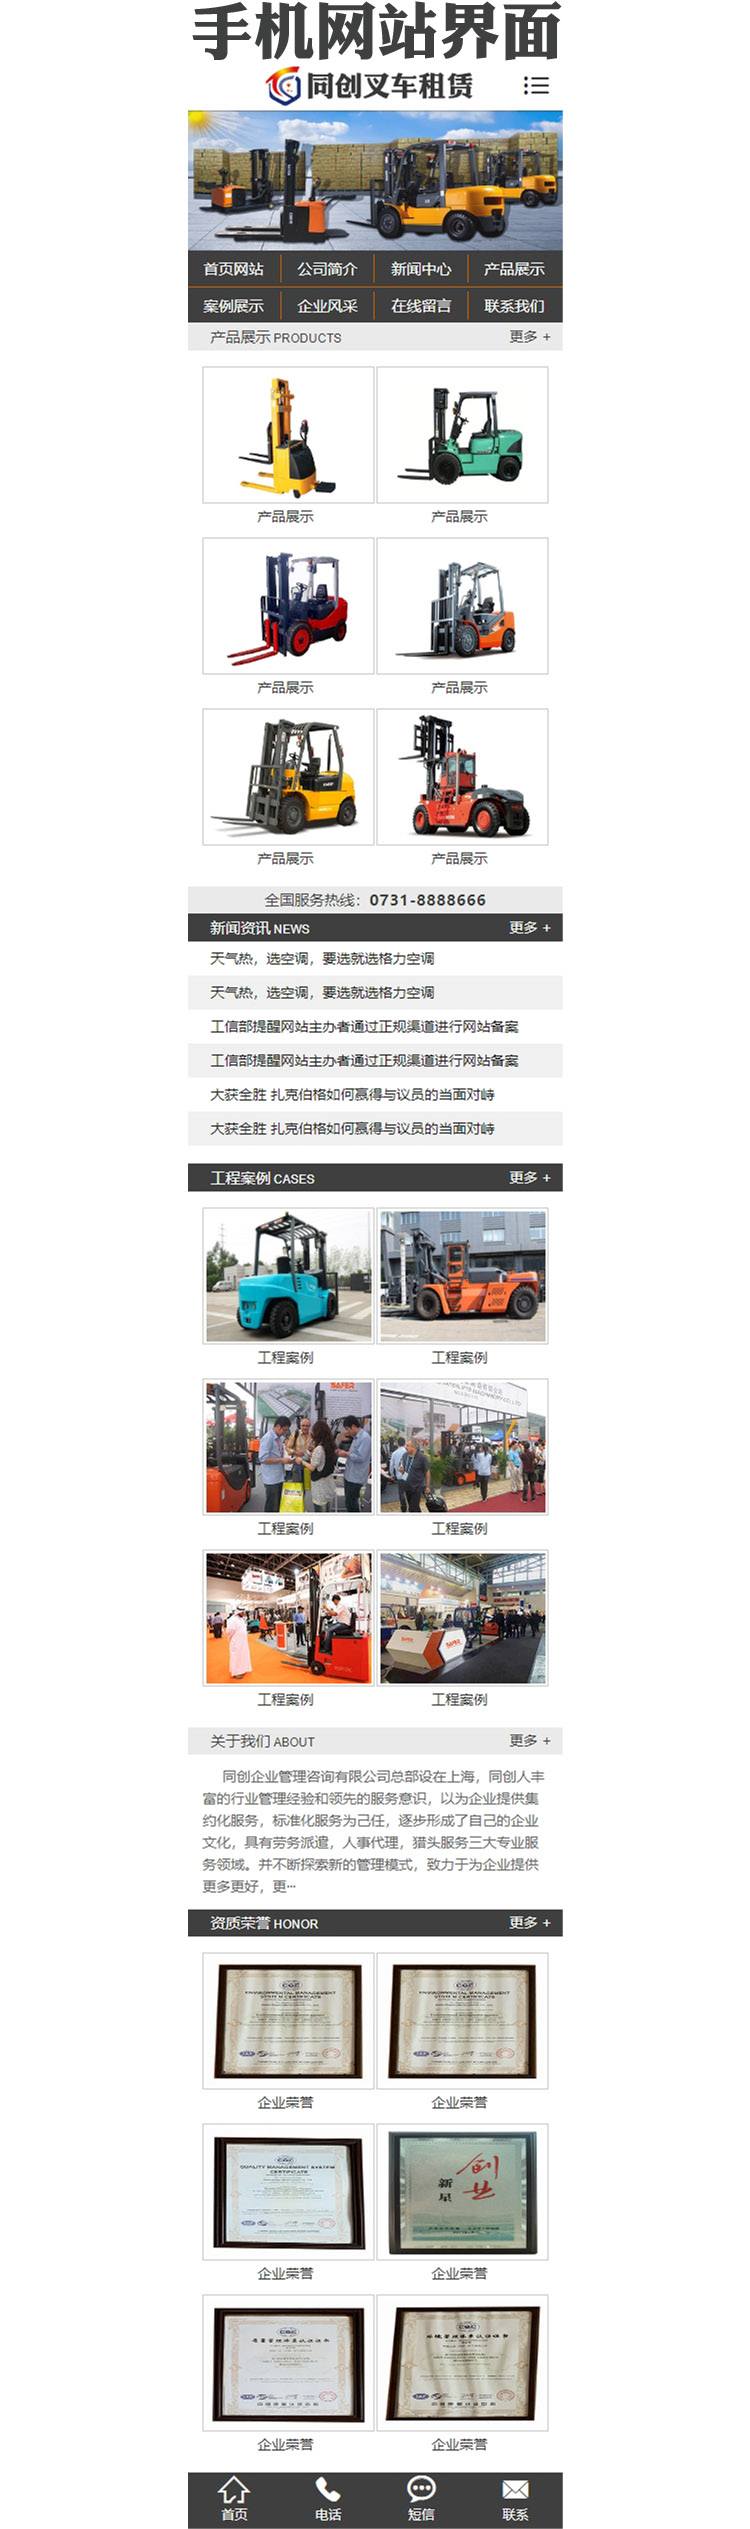 大气叉车设备企业网站源码程序-PB059-3